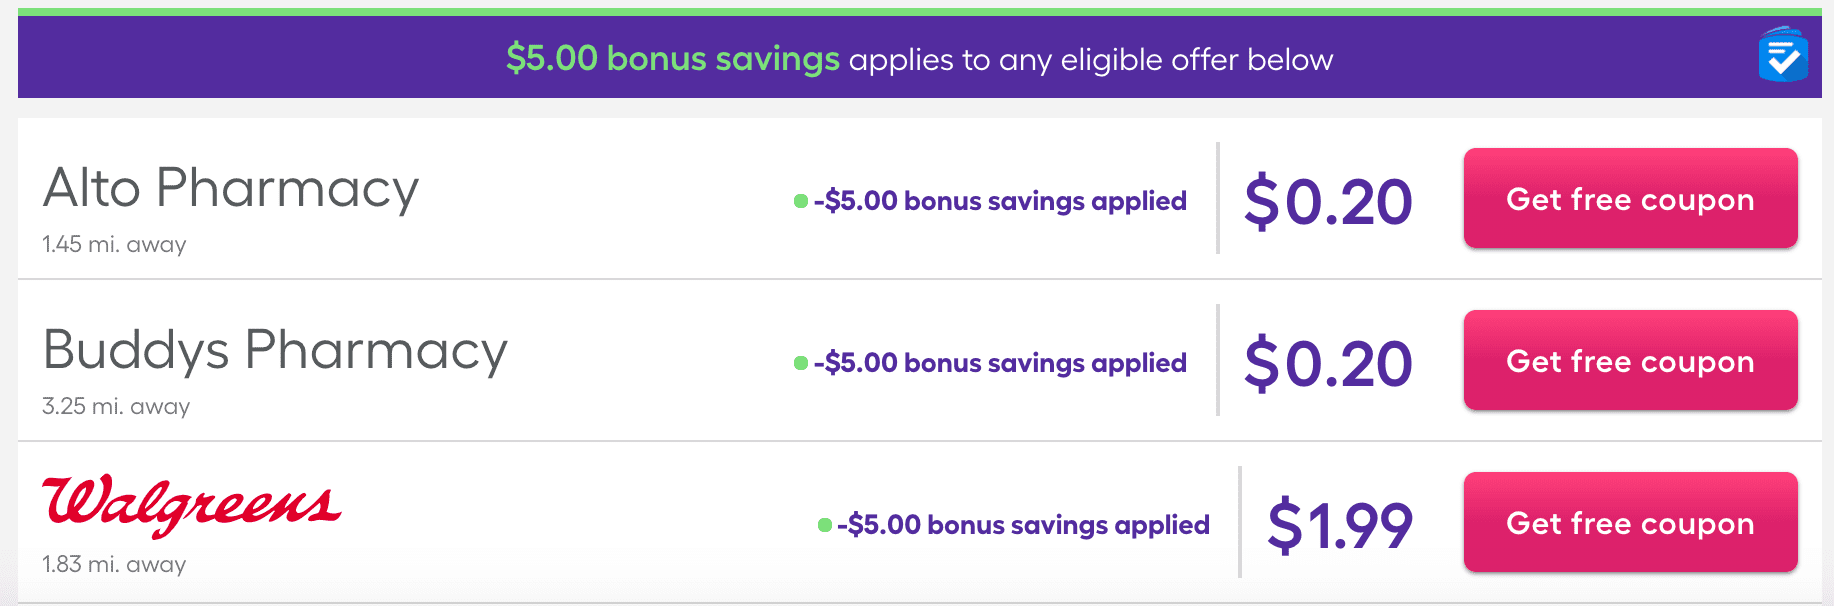 SingleCare Bonus Savings